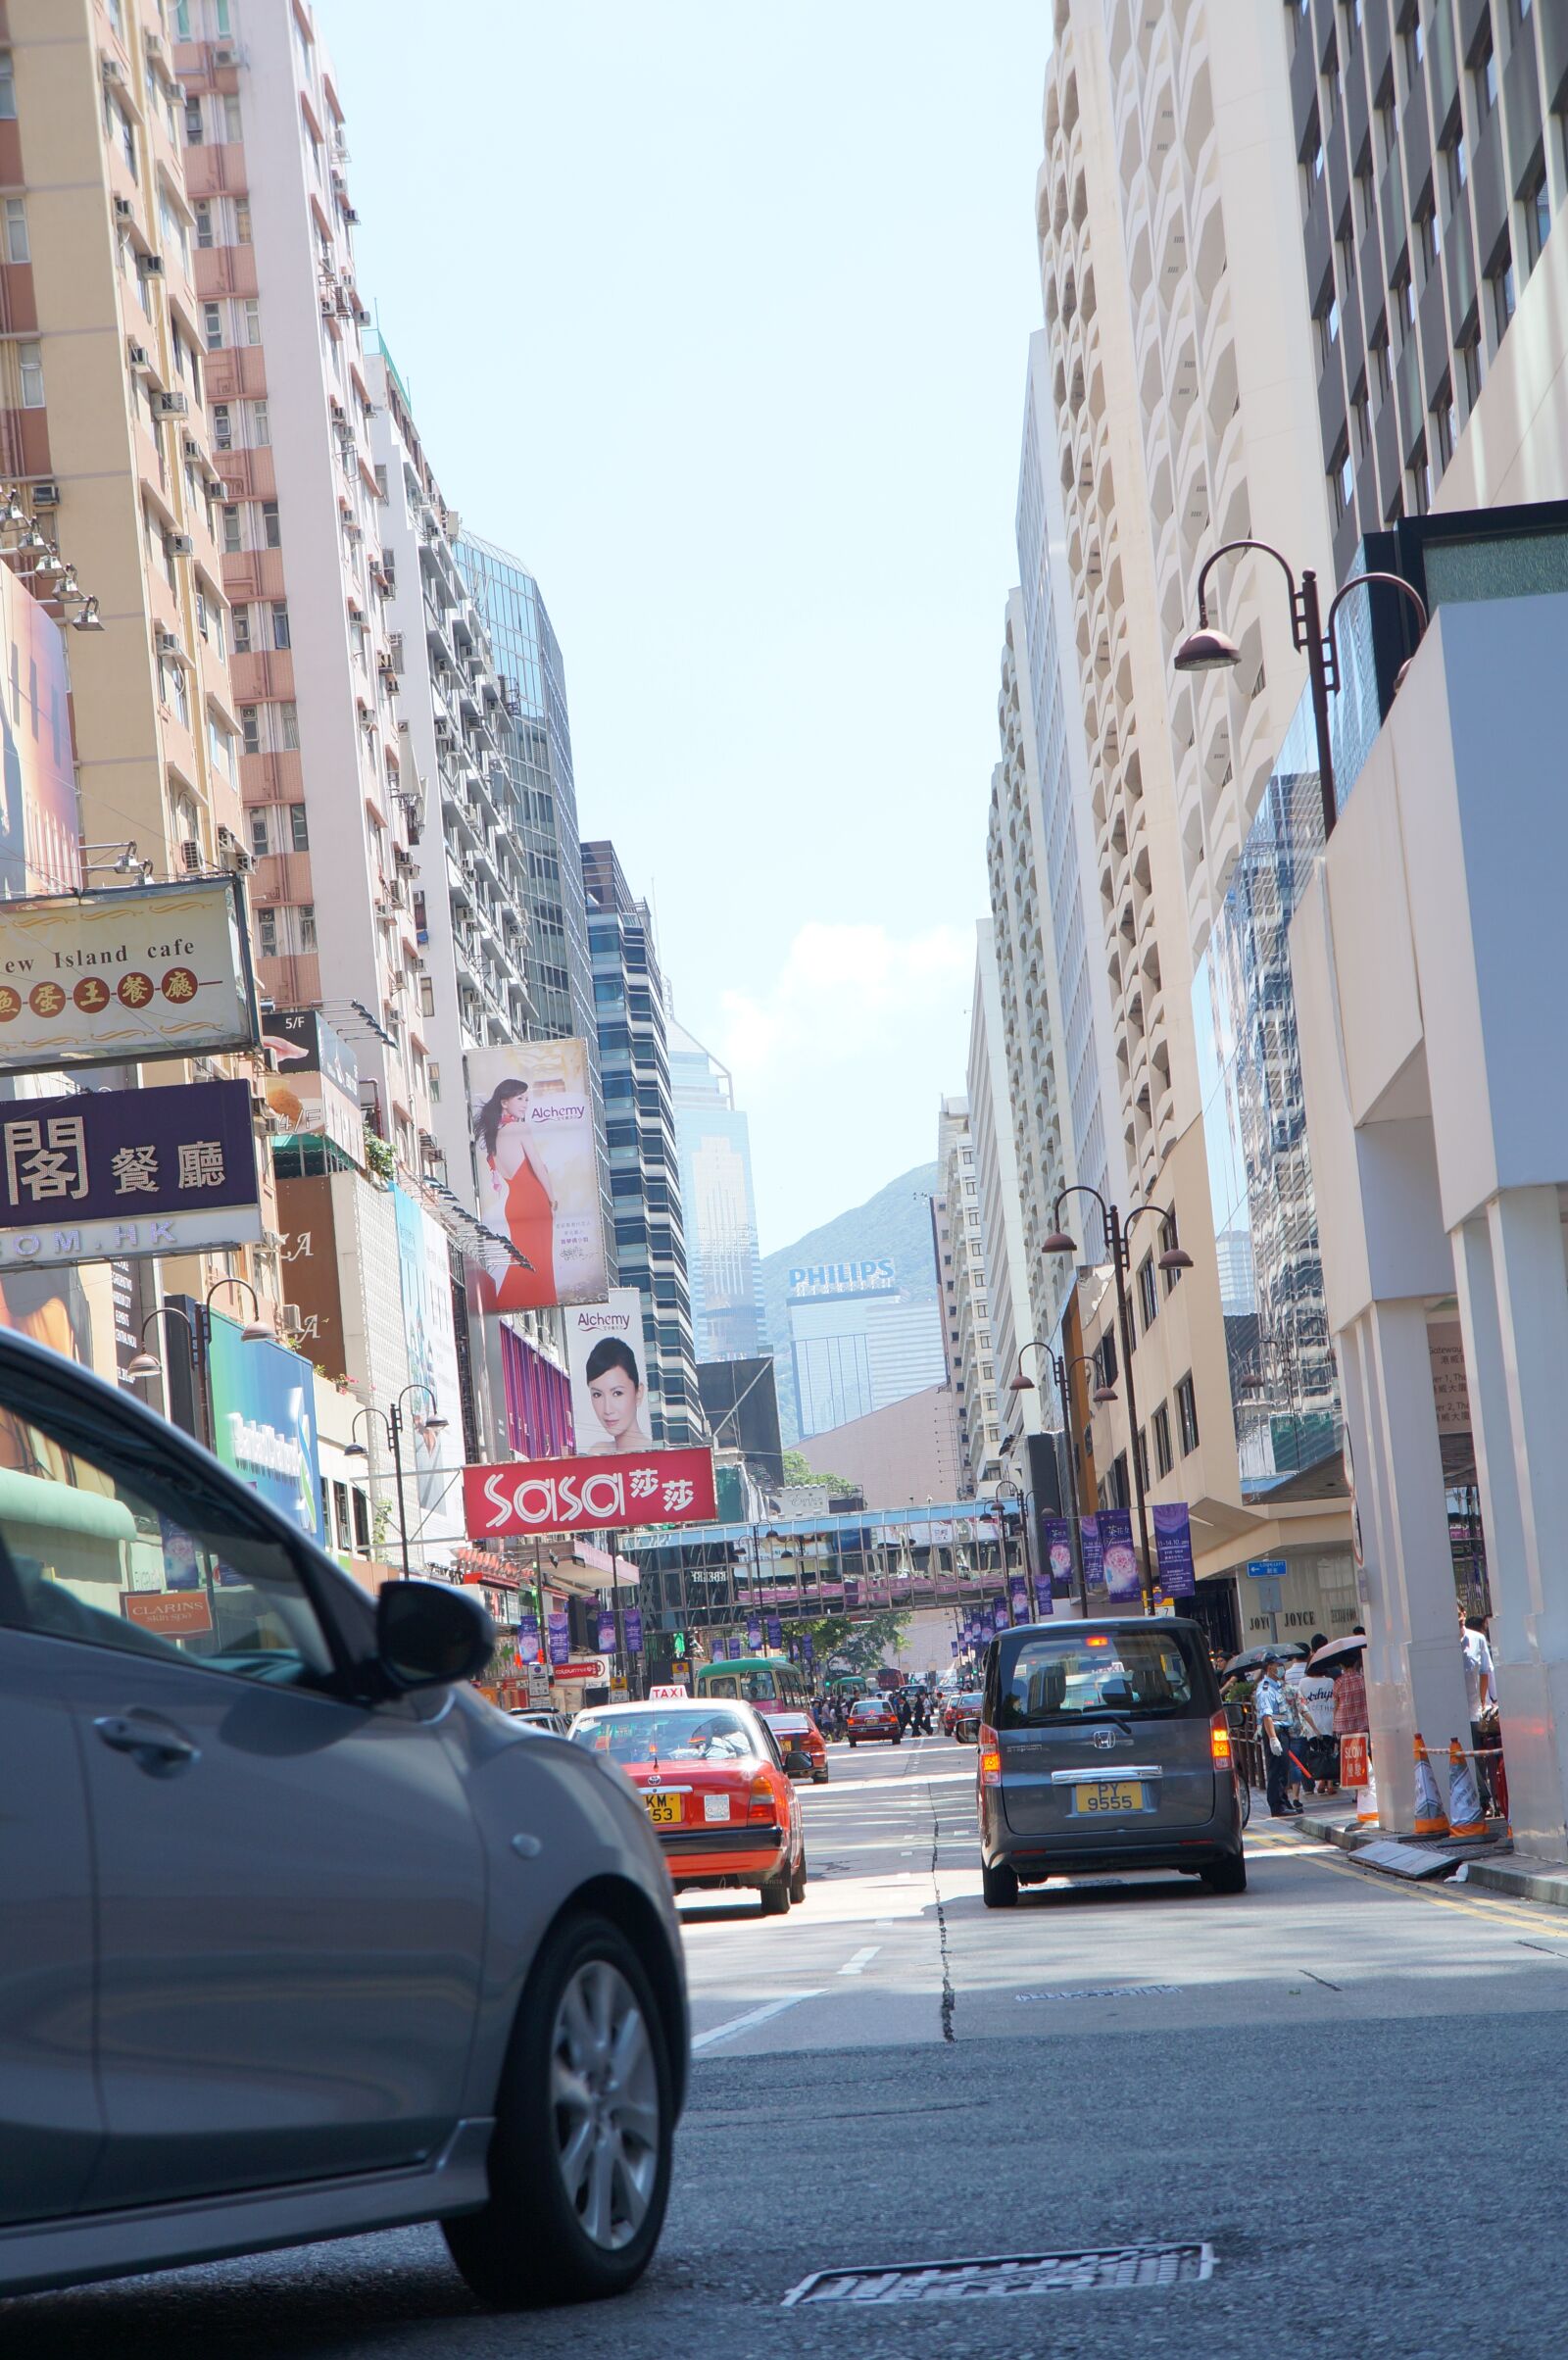 Sony Alpha NEX-F3 + Sony E 18-55mm F3.5-5.6 OSS sample photo. Hongkong, city, cityscape photography